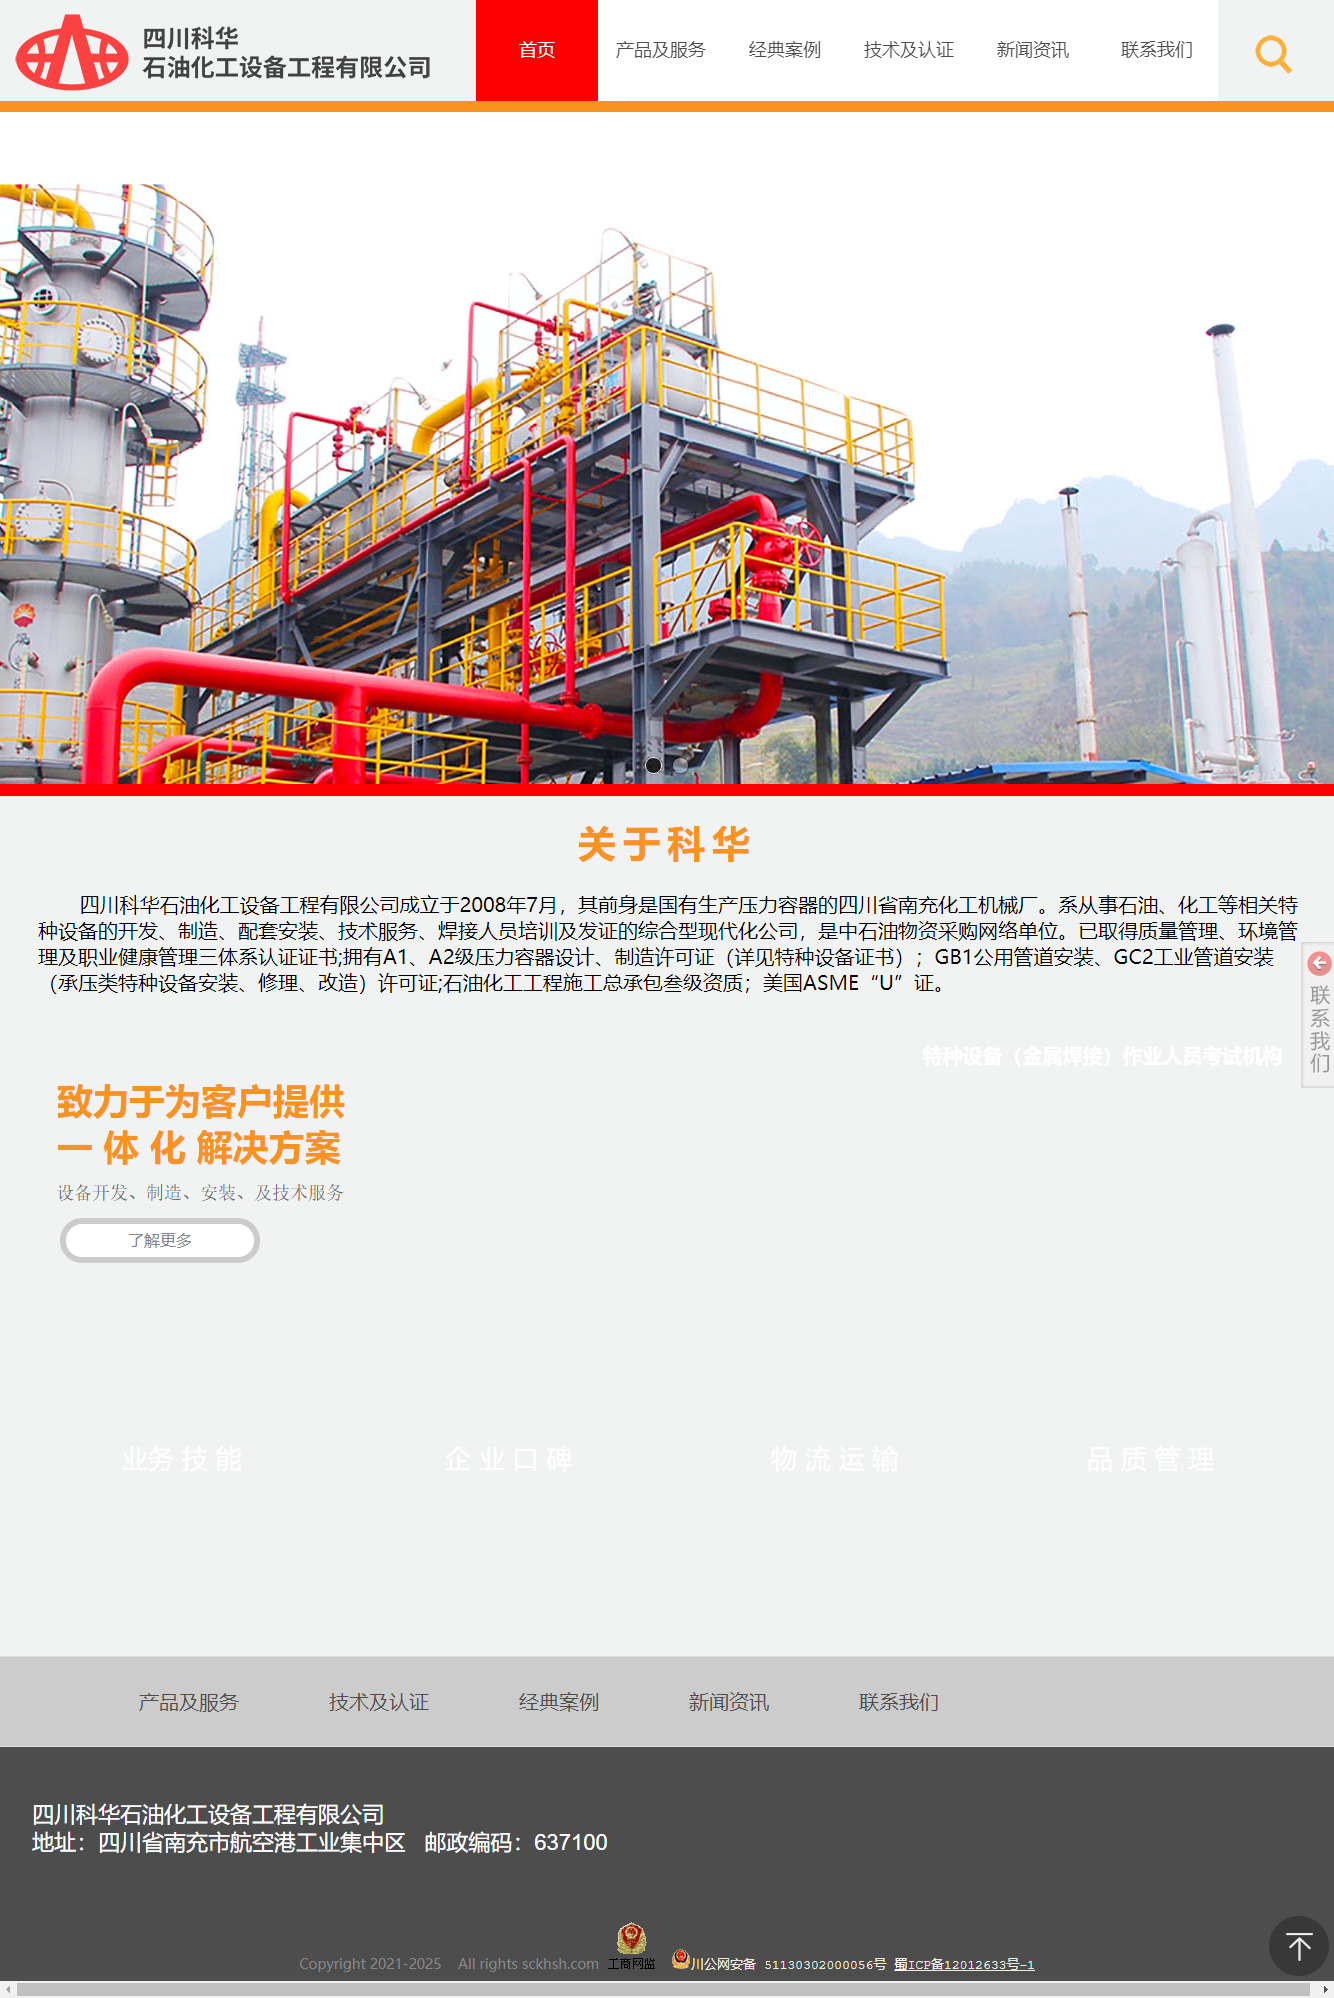 四川科华石油化工设备工程有限公司网站案例